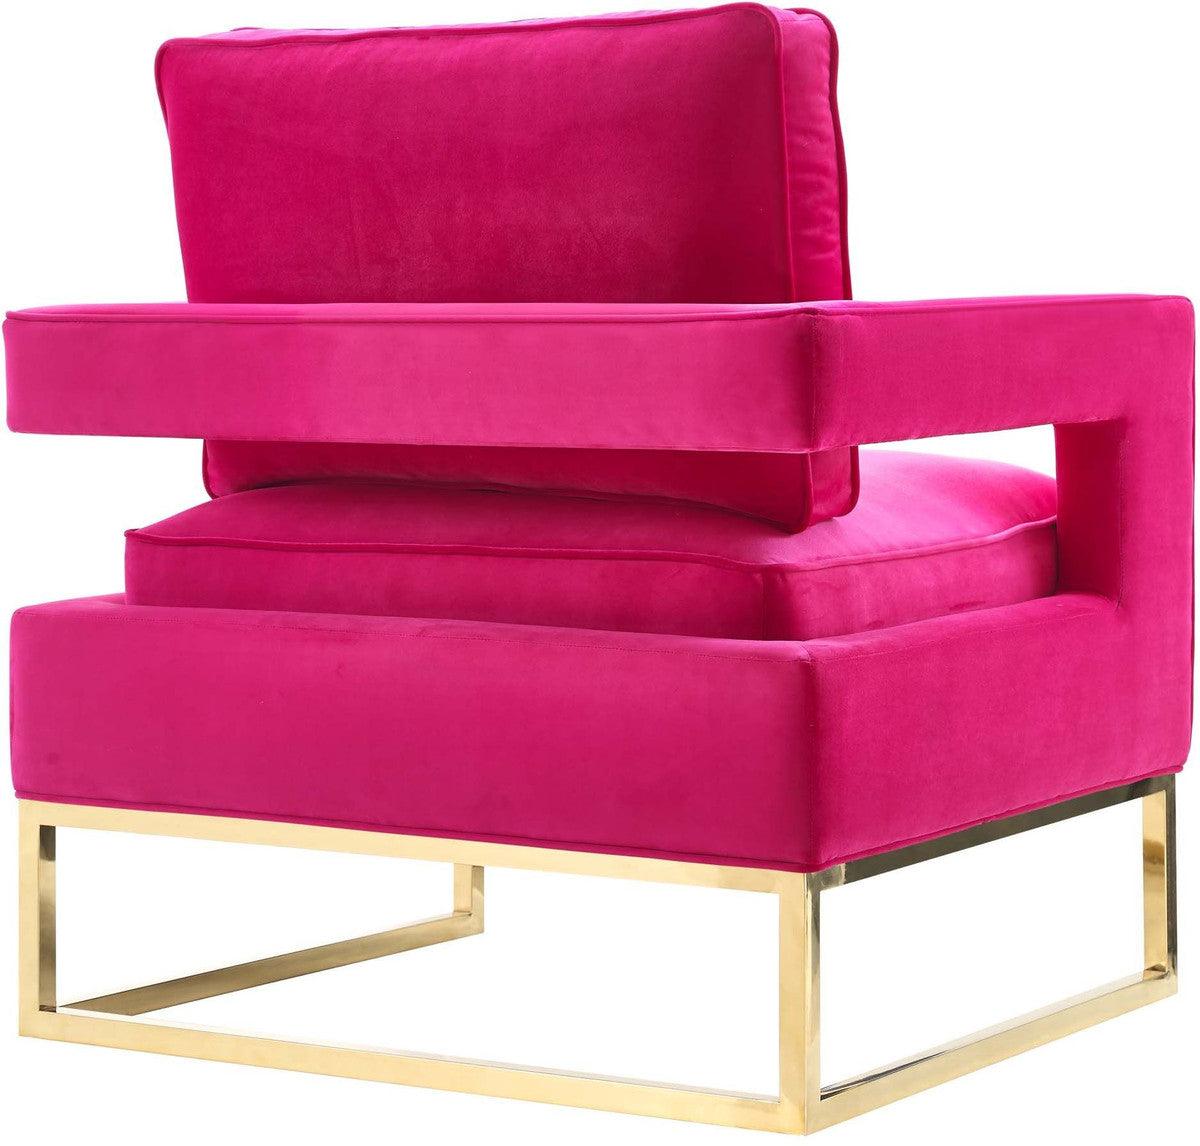 Annabelle Pink Velvet Chair - Euro Living Furniture